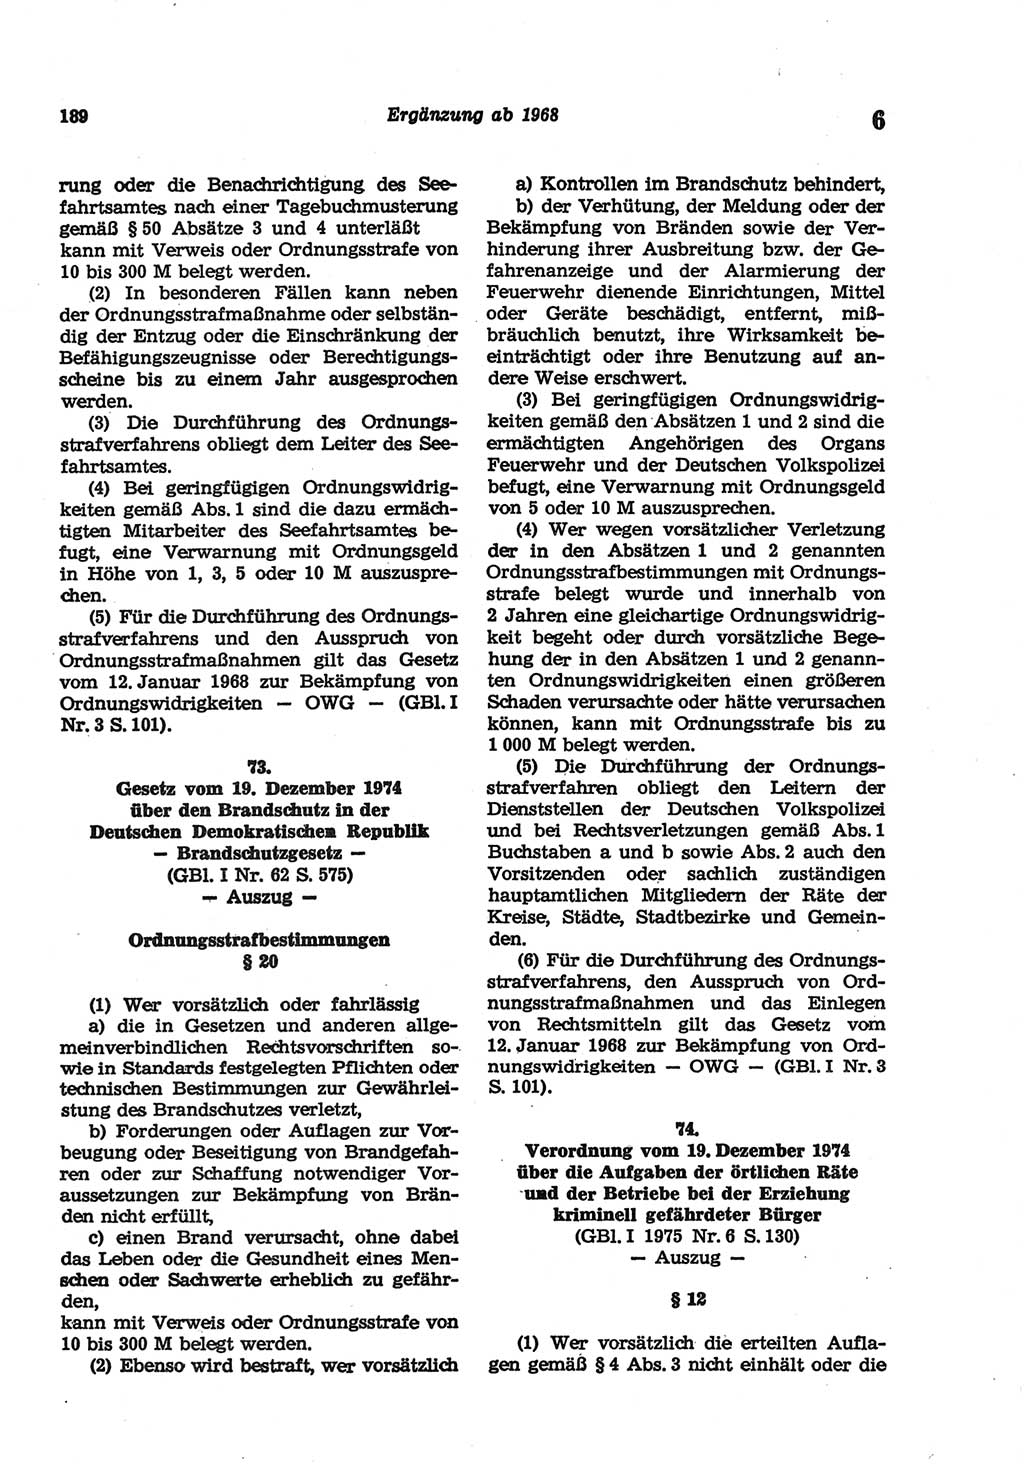 Strafgesetzbuch (StGB) der Deutschen Demokratischen Republik (DDR) und angrenzende Gesetze und Bestimmungen 1977, Seite 189 (StGB DDR Ges. Best. 1977, S. 189)